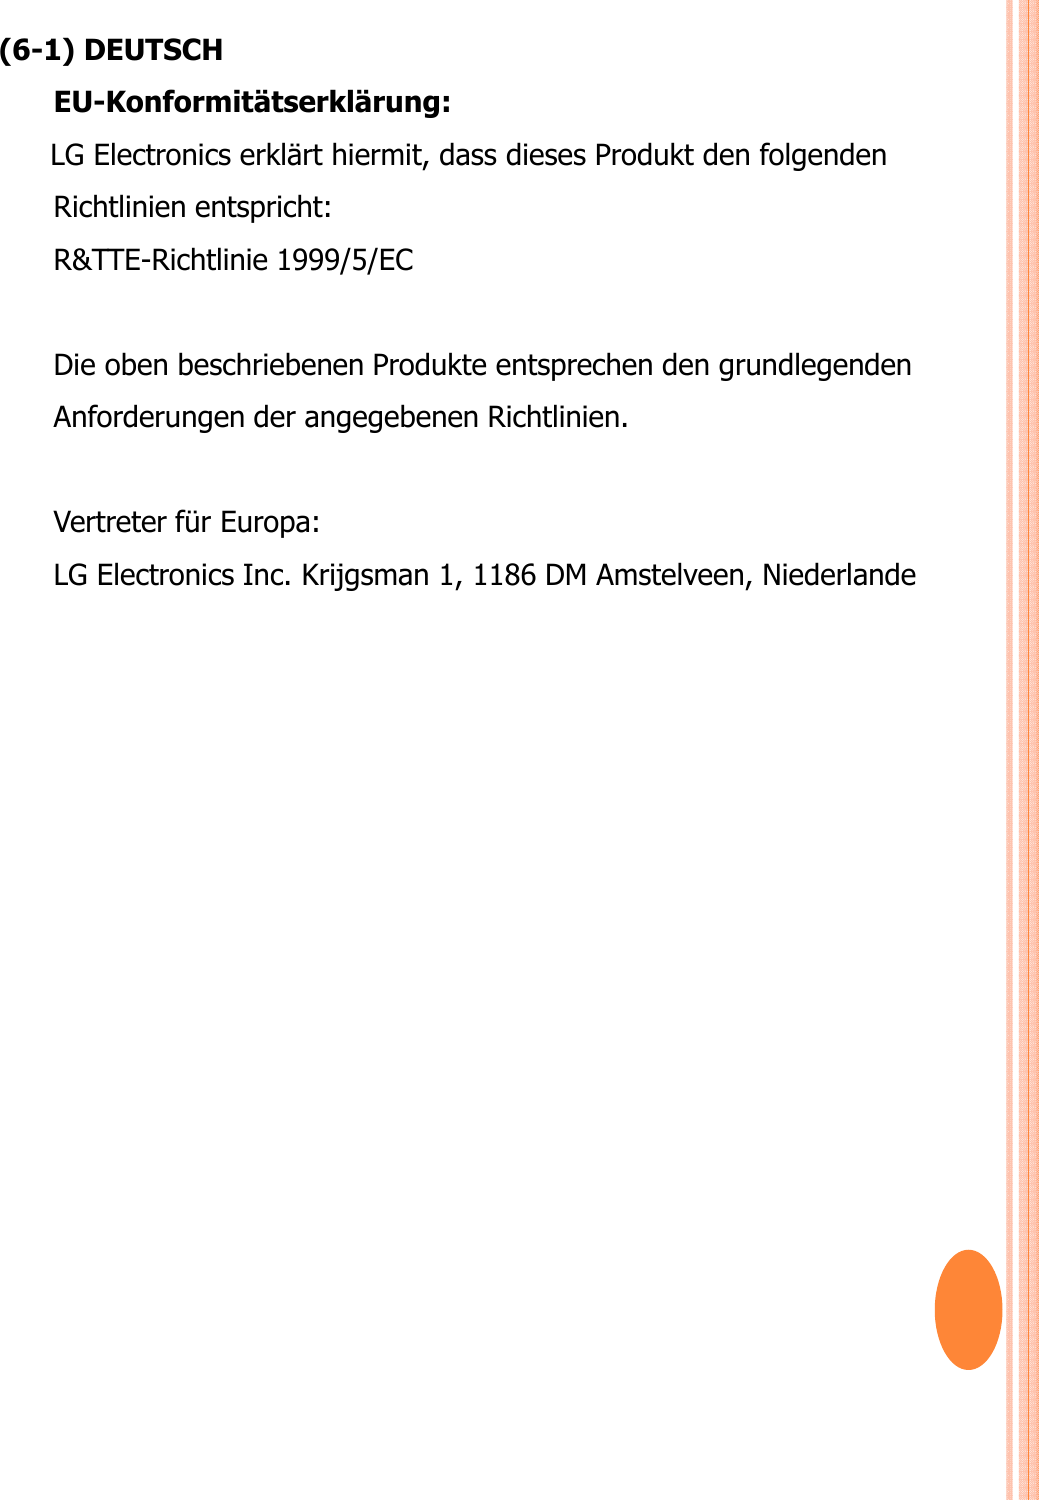 (6-1) DEUTSCHEU-Konformitätserklärung: LG Electronics erklärt hiermit, dass dieses Produkt den folgenden Richtlinien entspricht:R&amp;TTE-Richtlinie 1999/5/EC Die oben beschriebenen Produkte entsprechen den grundlegenden Anforderungen der angegebenen Richtlinien.Vertreter für Europa: LG Electronics Inc. Krijgsman 1, 1186 DM Amstelveen, Niederlande